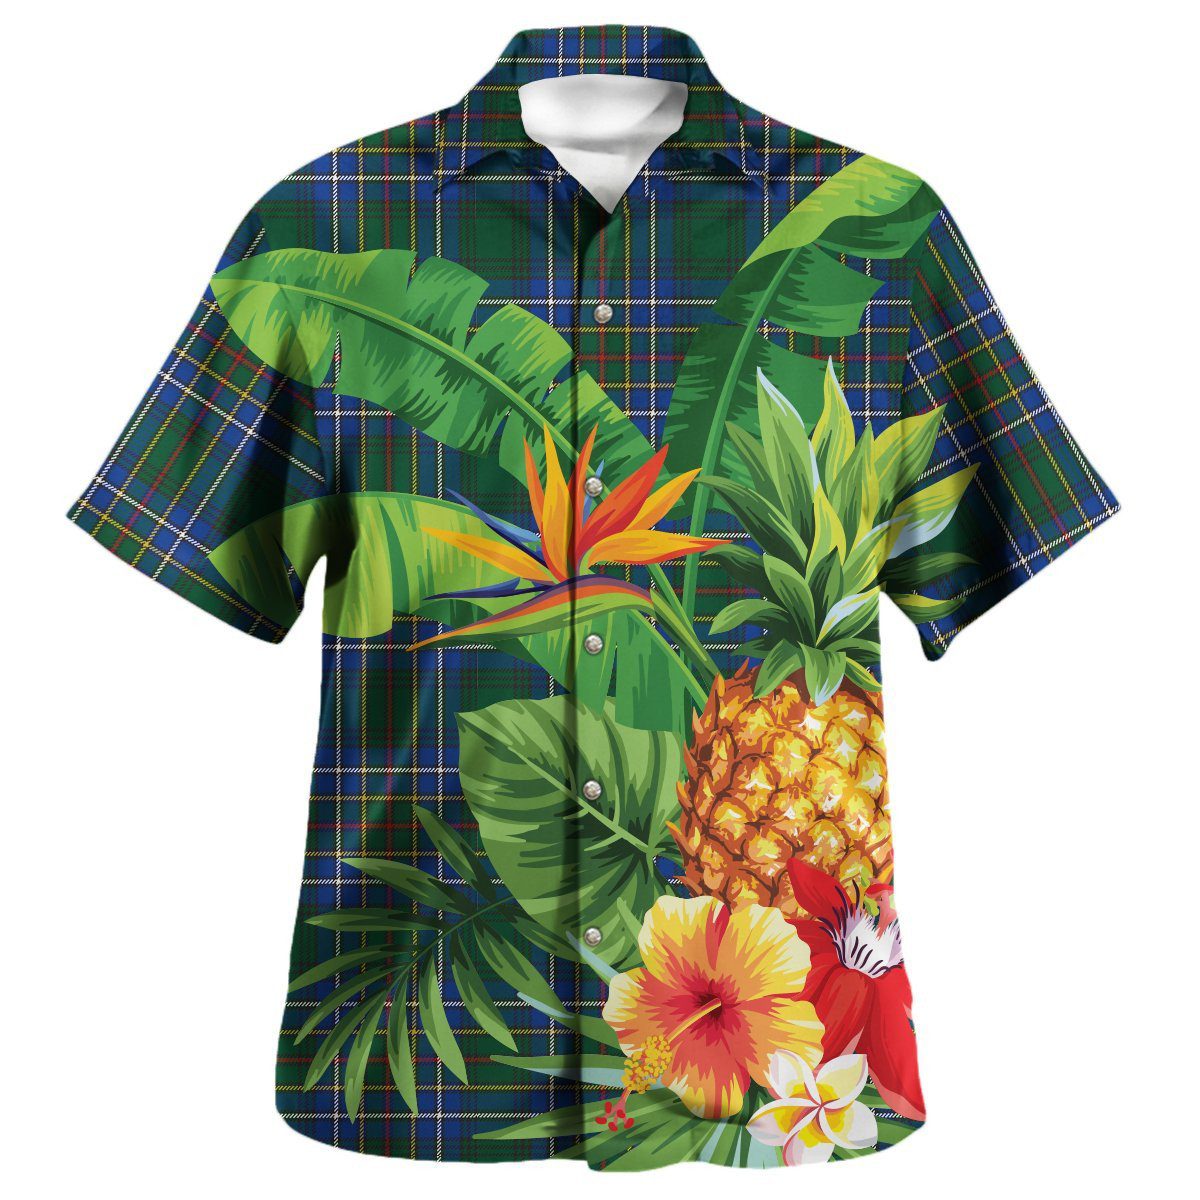 Cockburn Ancient Tartan Aloha Shirt version 2